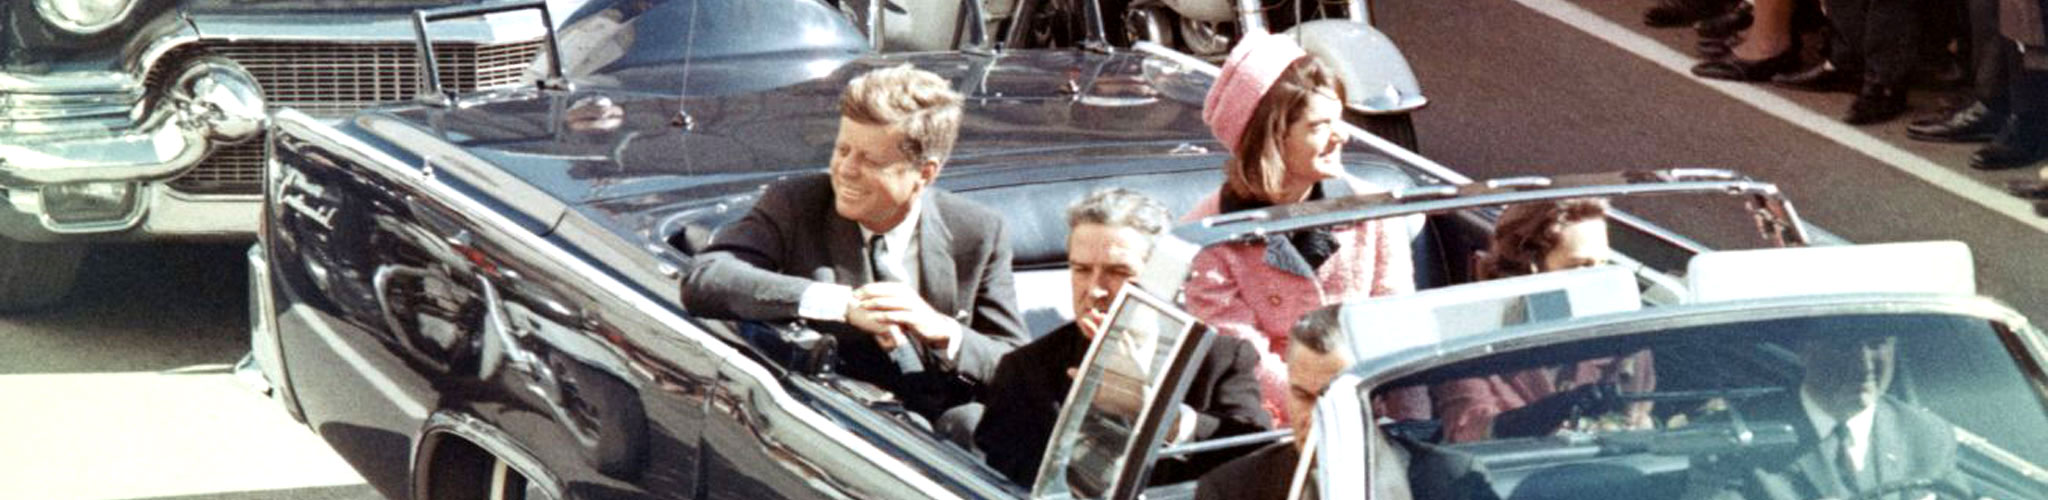 Photo du président Kennedy dans sa limousine à Dallas, Texas, sur Main Street, quelques minutes avant son assassinat. Dans la limousine présidentielle se trouvent également son épouse Jackie Kennedy, le gouverneur du Texas John Connally et sa femme, Nellie.